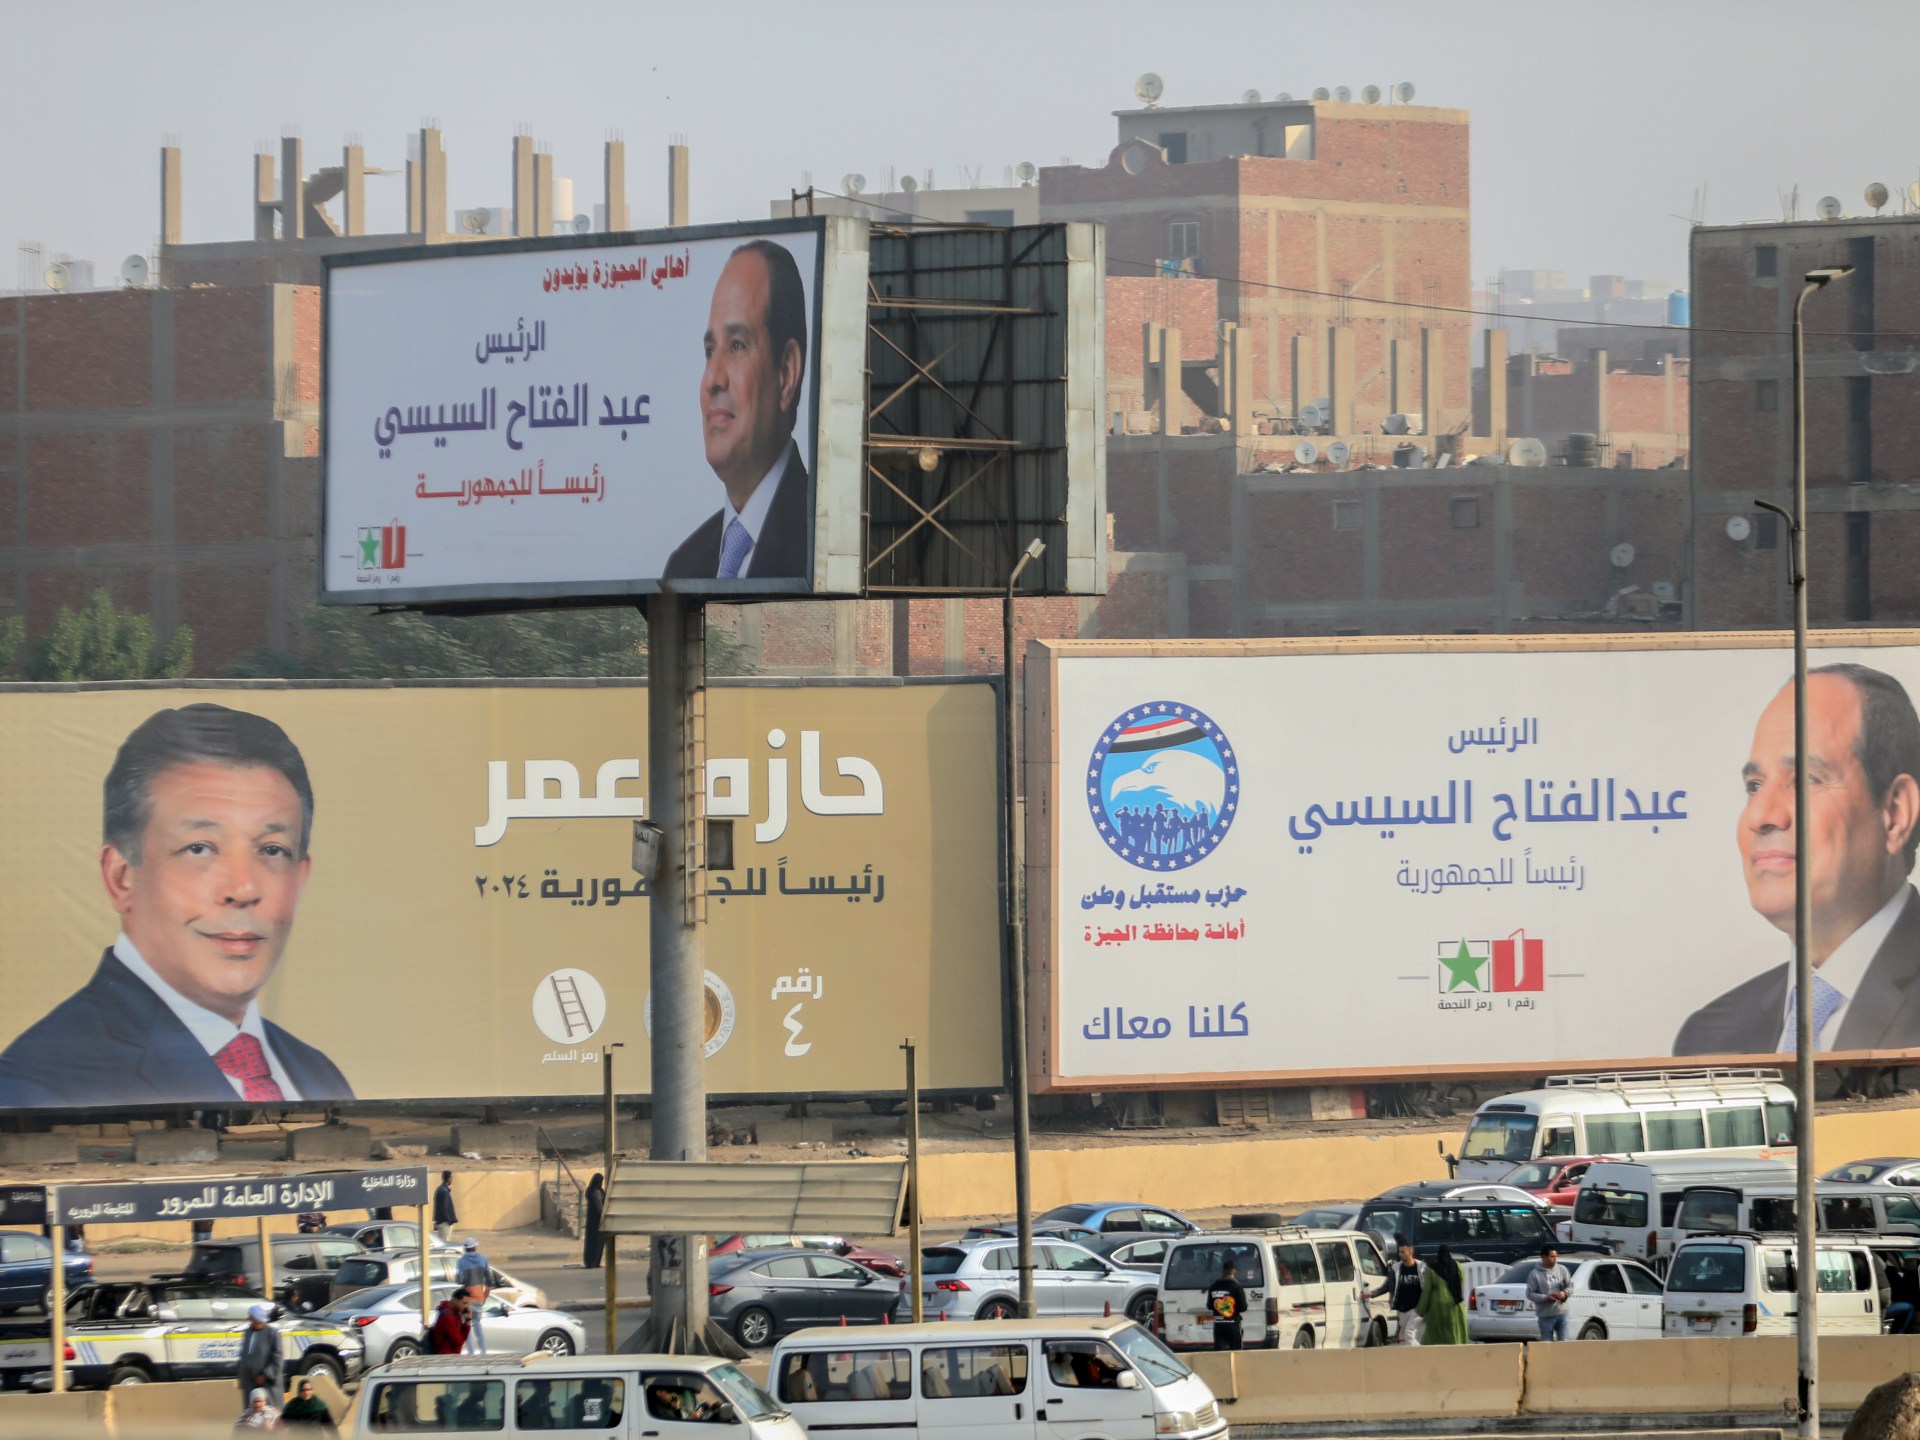 المصريون يدلون بأصواتهم في انتخابات رئاسية تمهد لولاية جديدة للسيسي | أخبار – البوكس نيوز